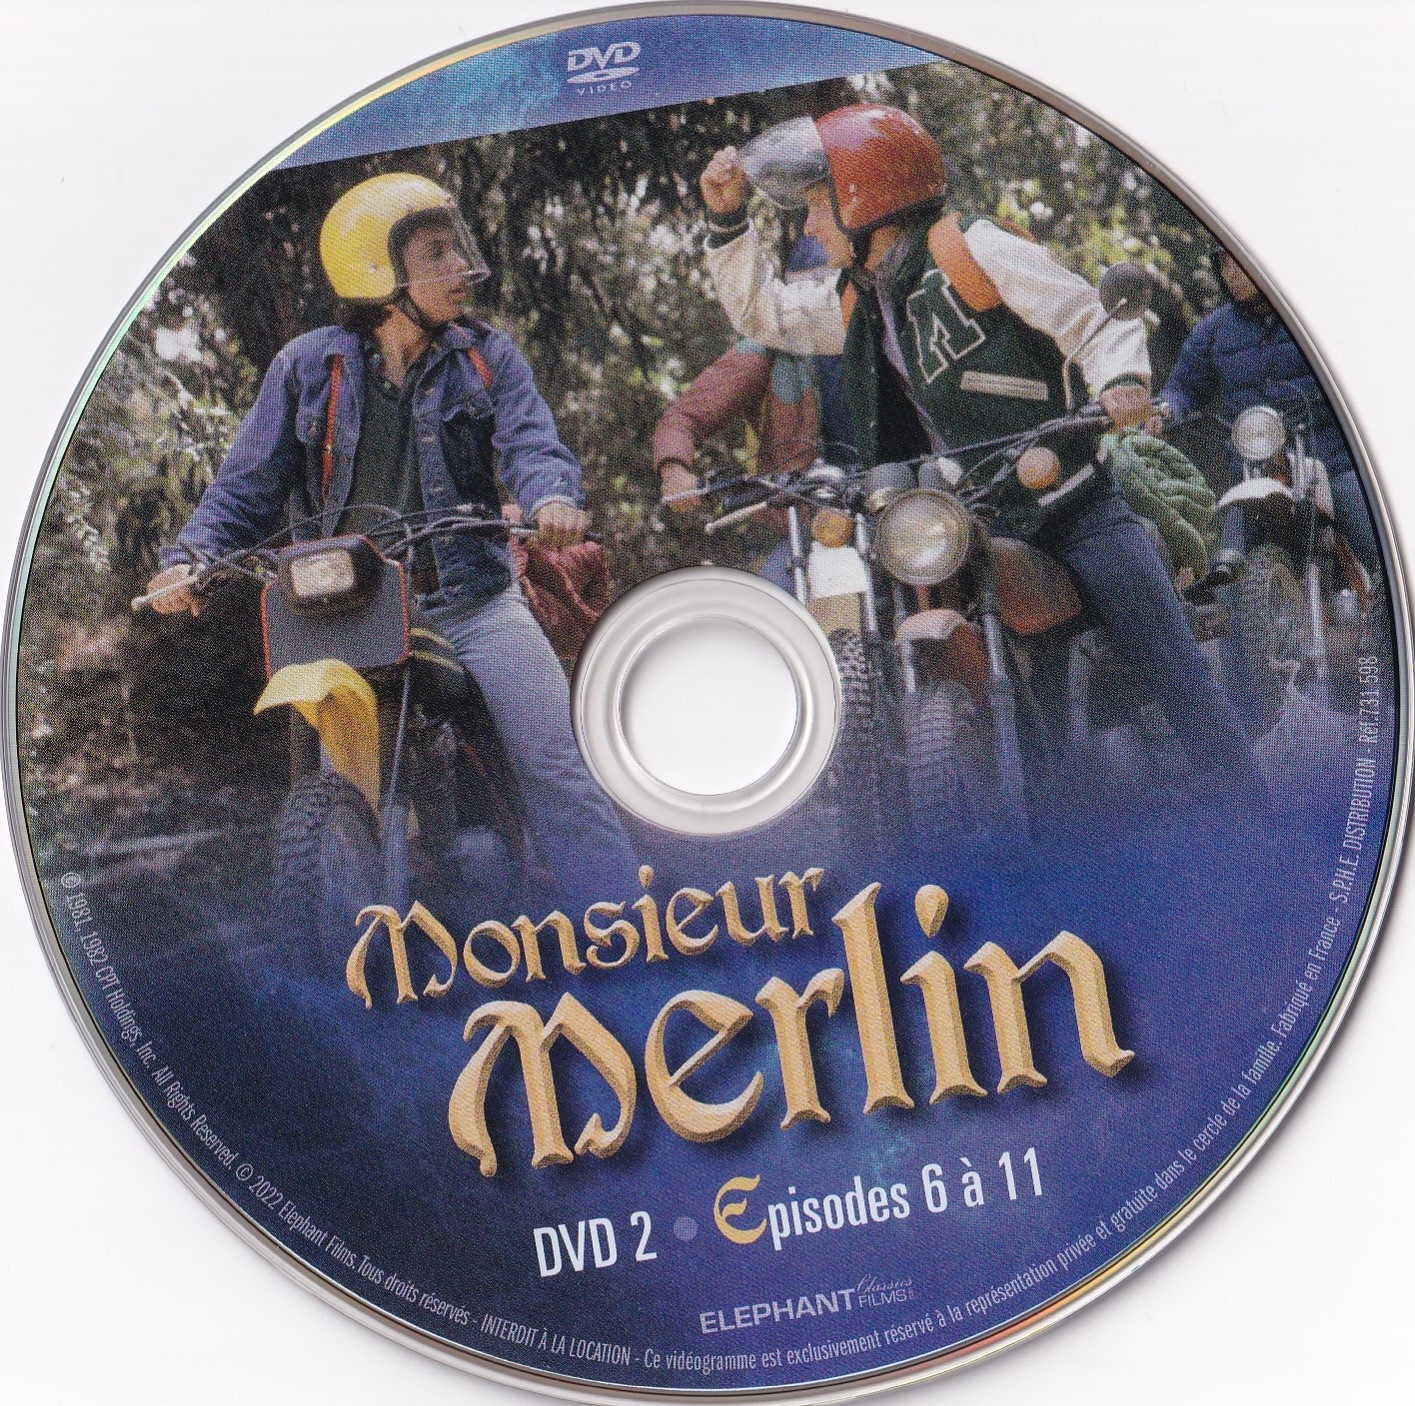 Monsieur Merlin DVD 2